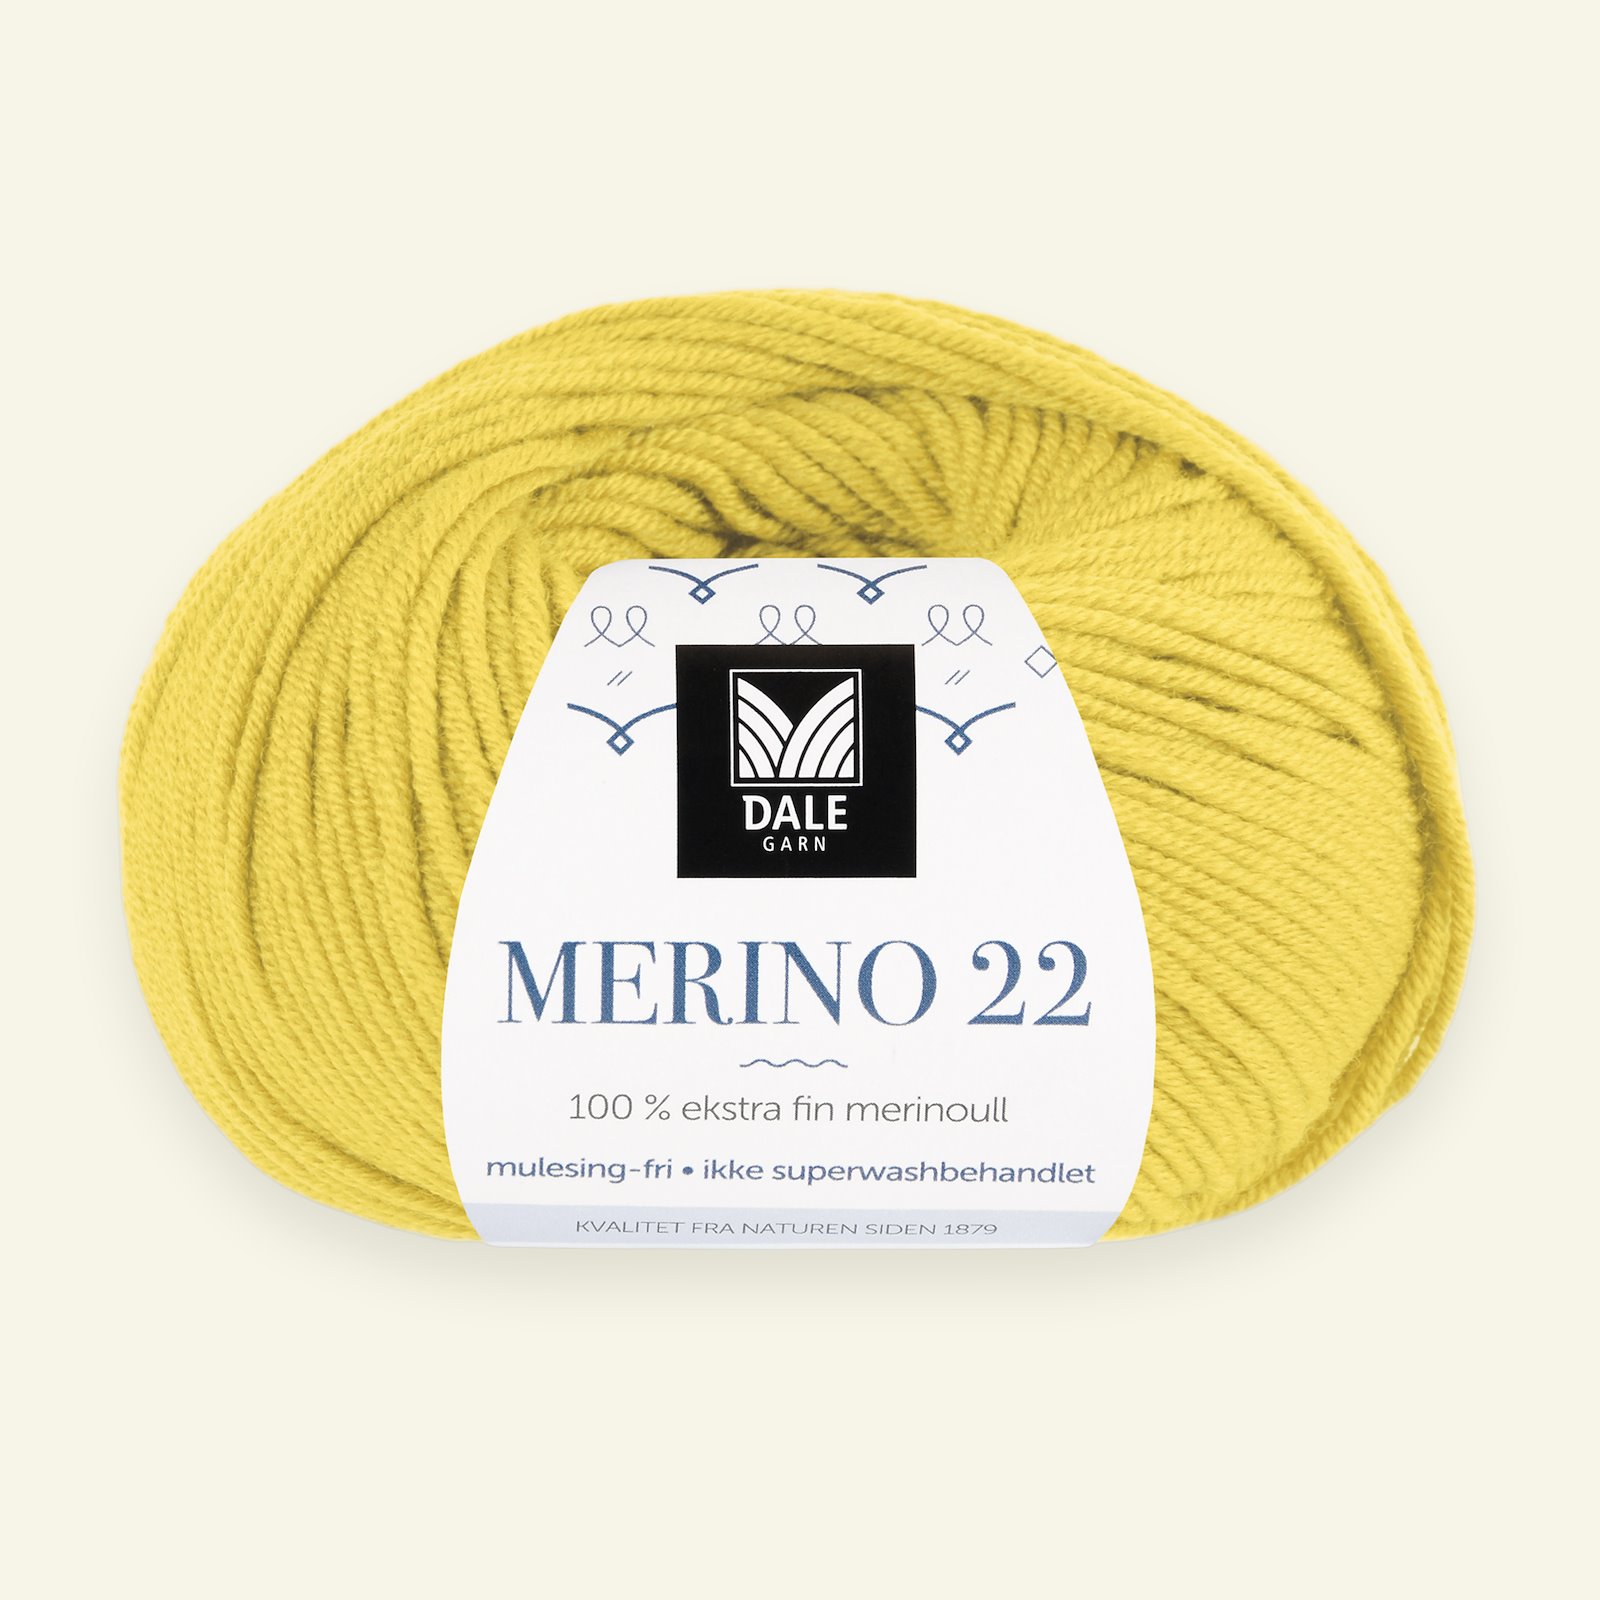 Dale Garn, 100% extra fine merino wool yarn, "Merino 22", yellow (2030) 90000391_pack